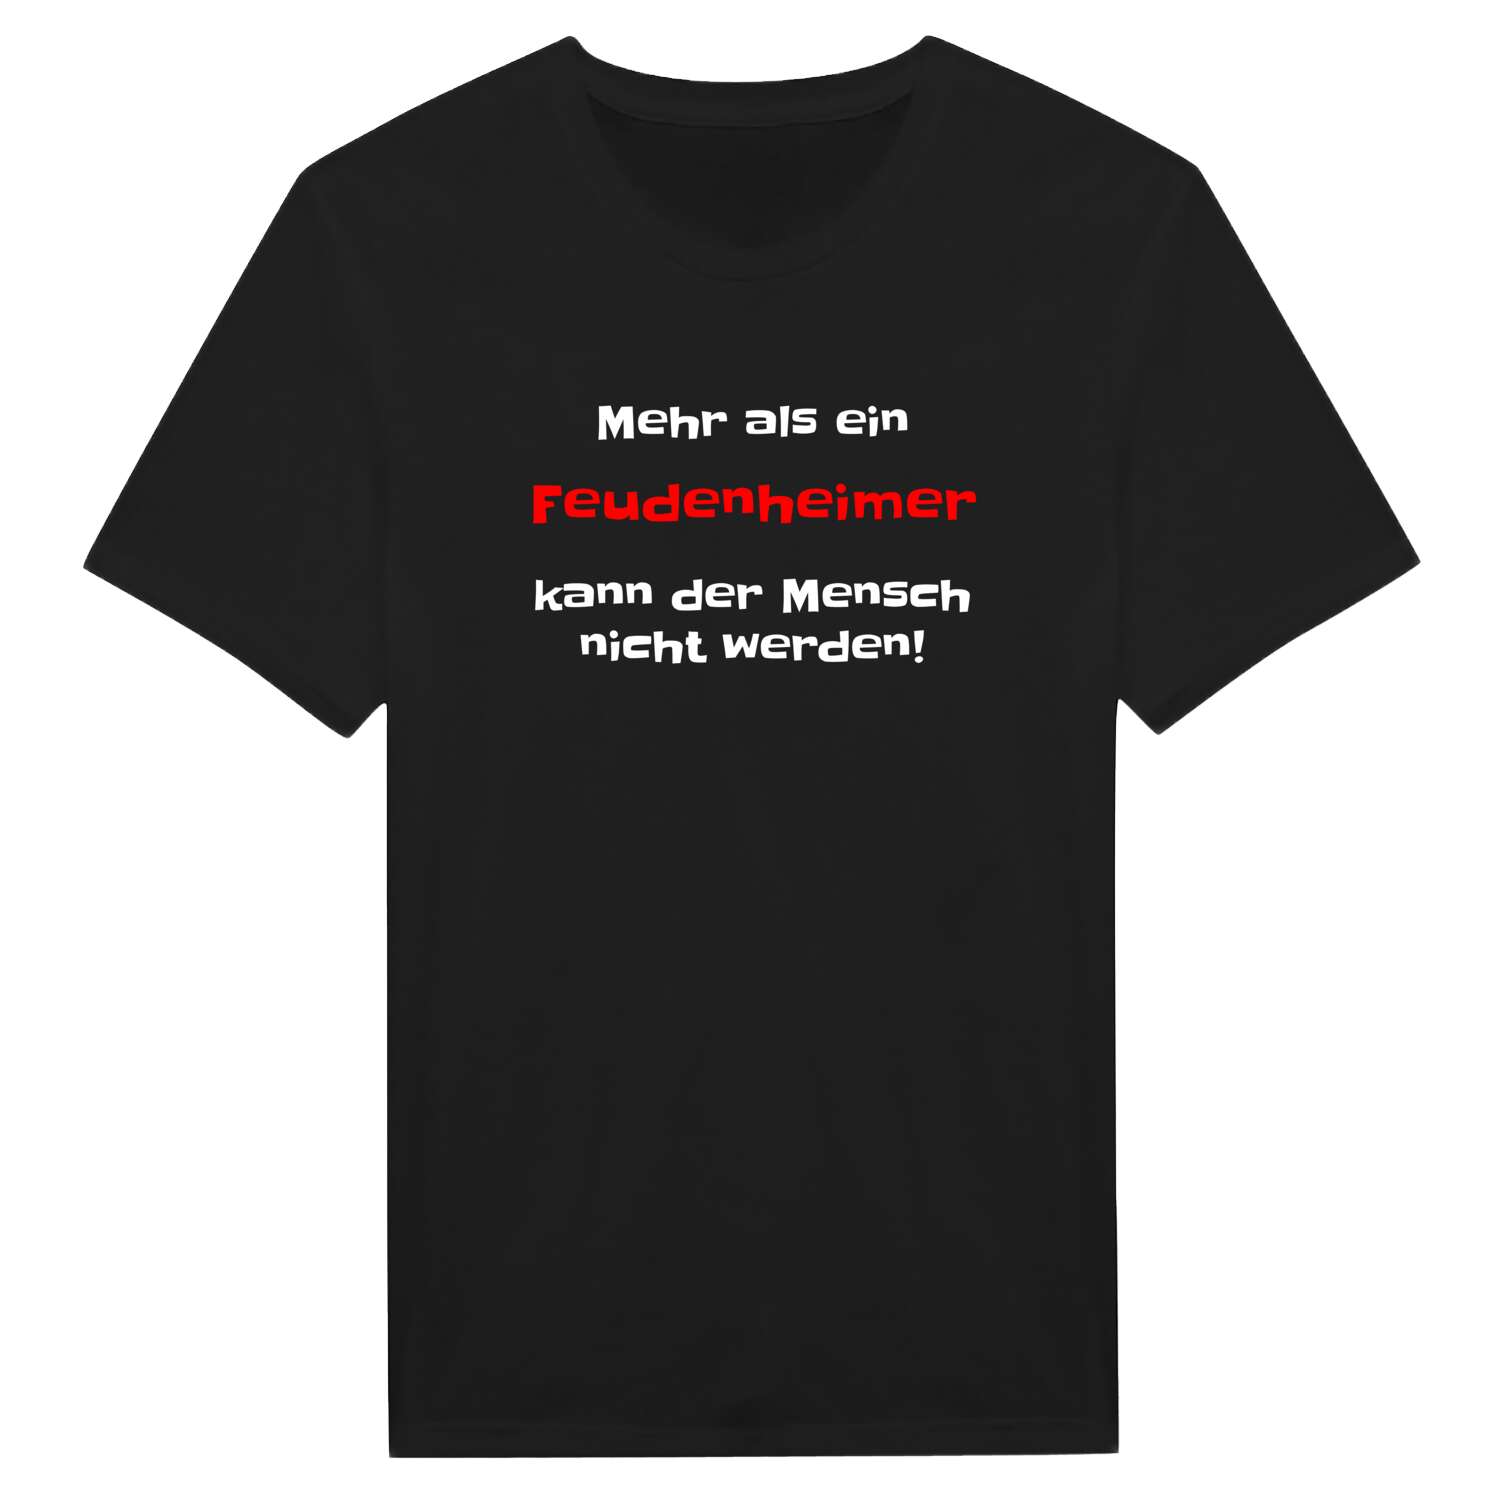 Feudenheim T-Shirt »Mehr als ein«